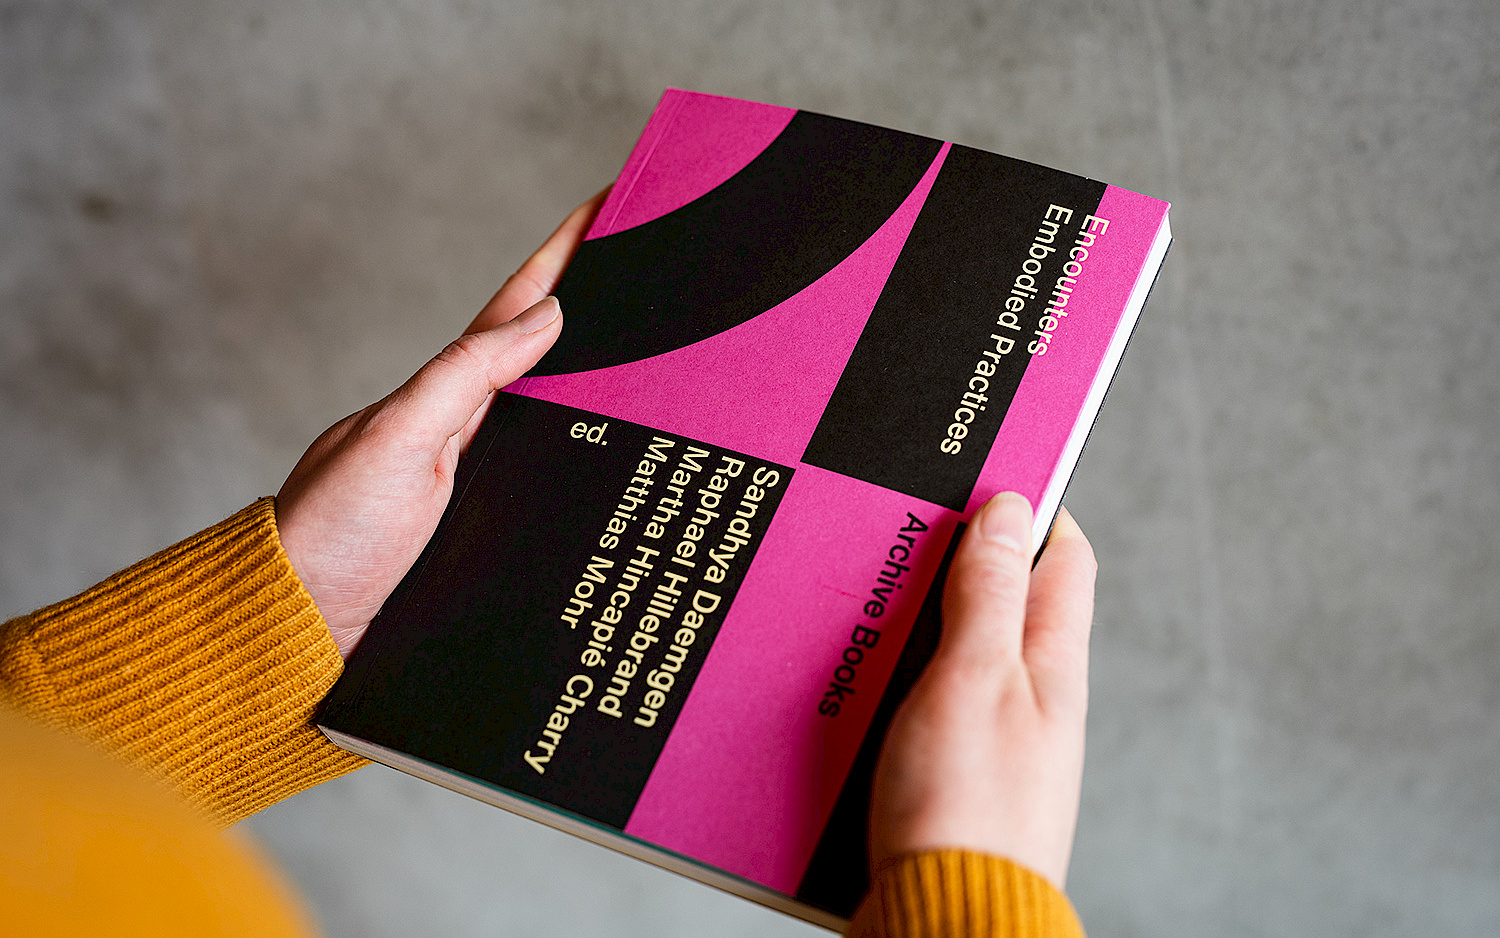 Eine Person hält das Buch "Encounters – Embodied Practices" in der Hand, das Cover ist grafisch gestaltet und schwarz und pink.